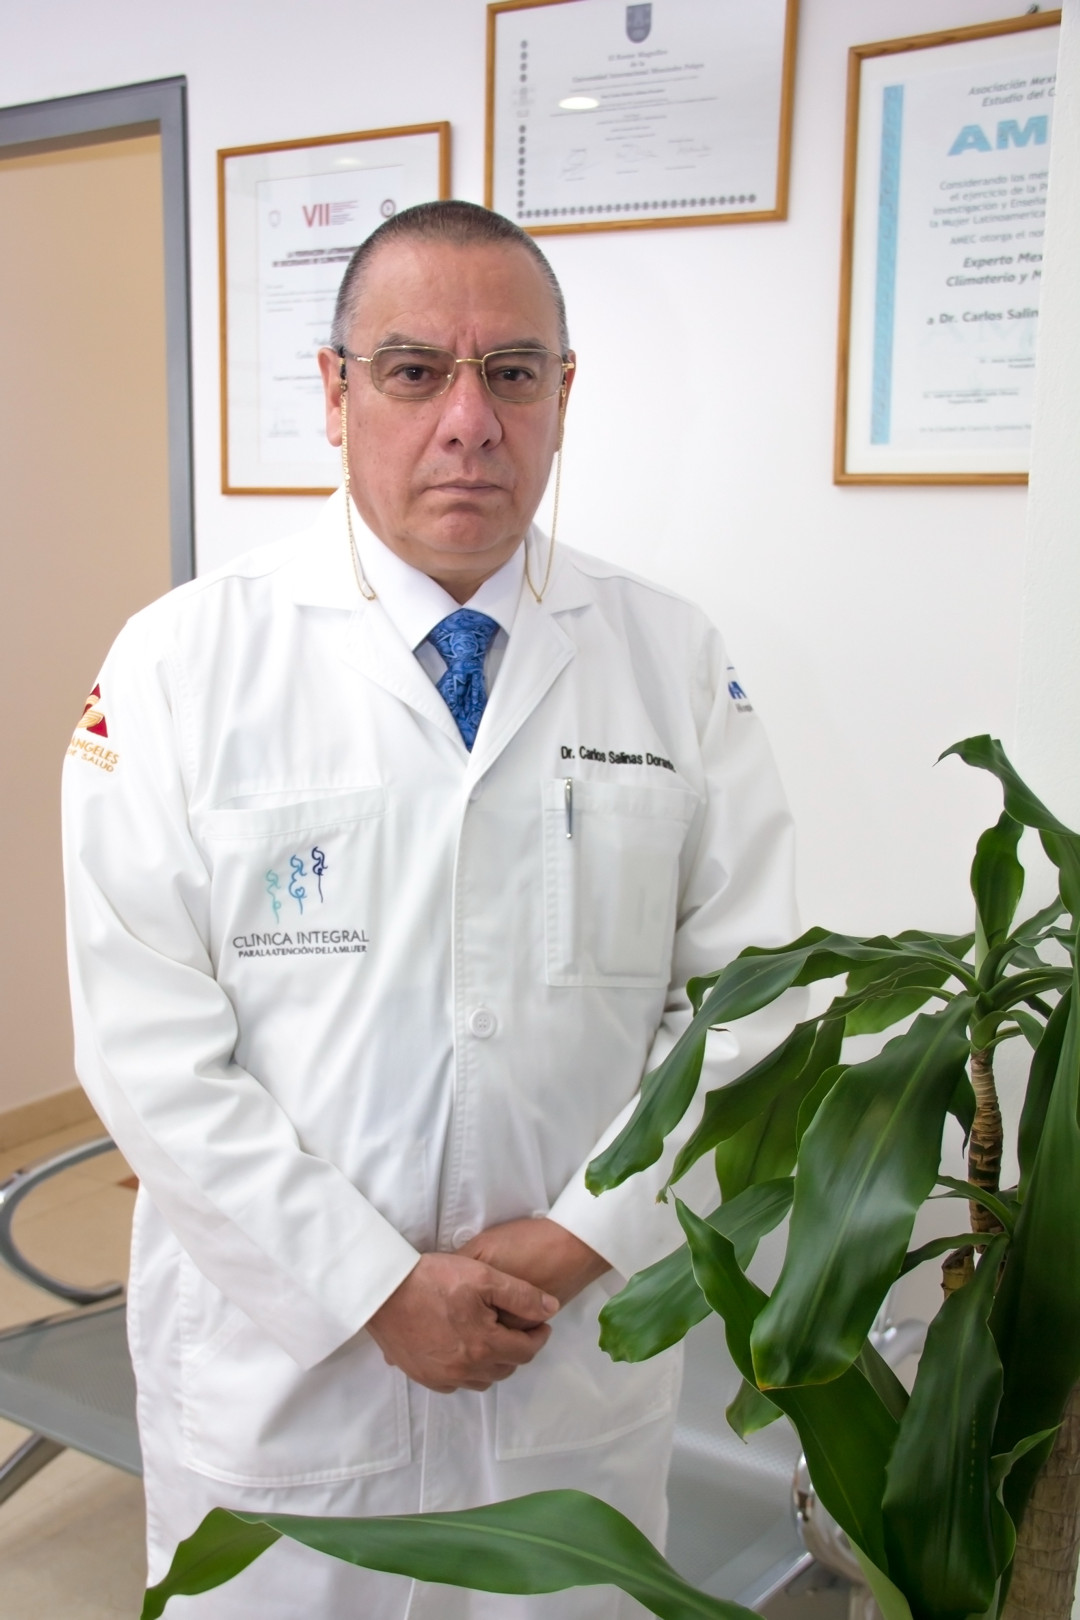 Dr. Carlos Salinas Dorantes